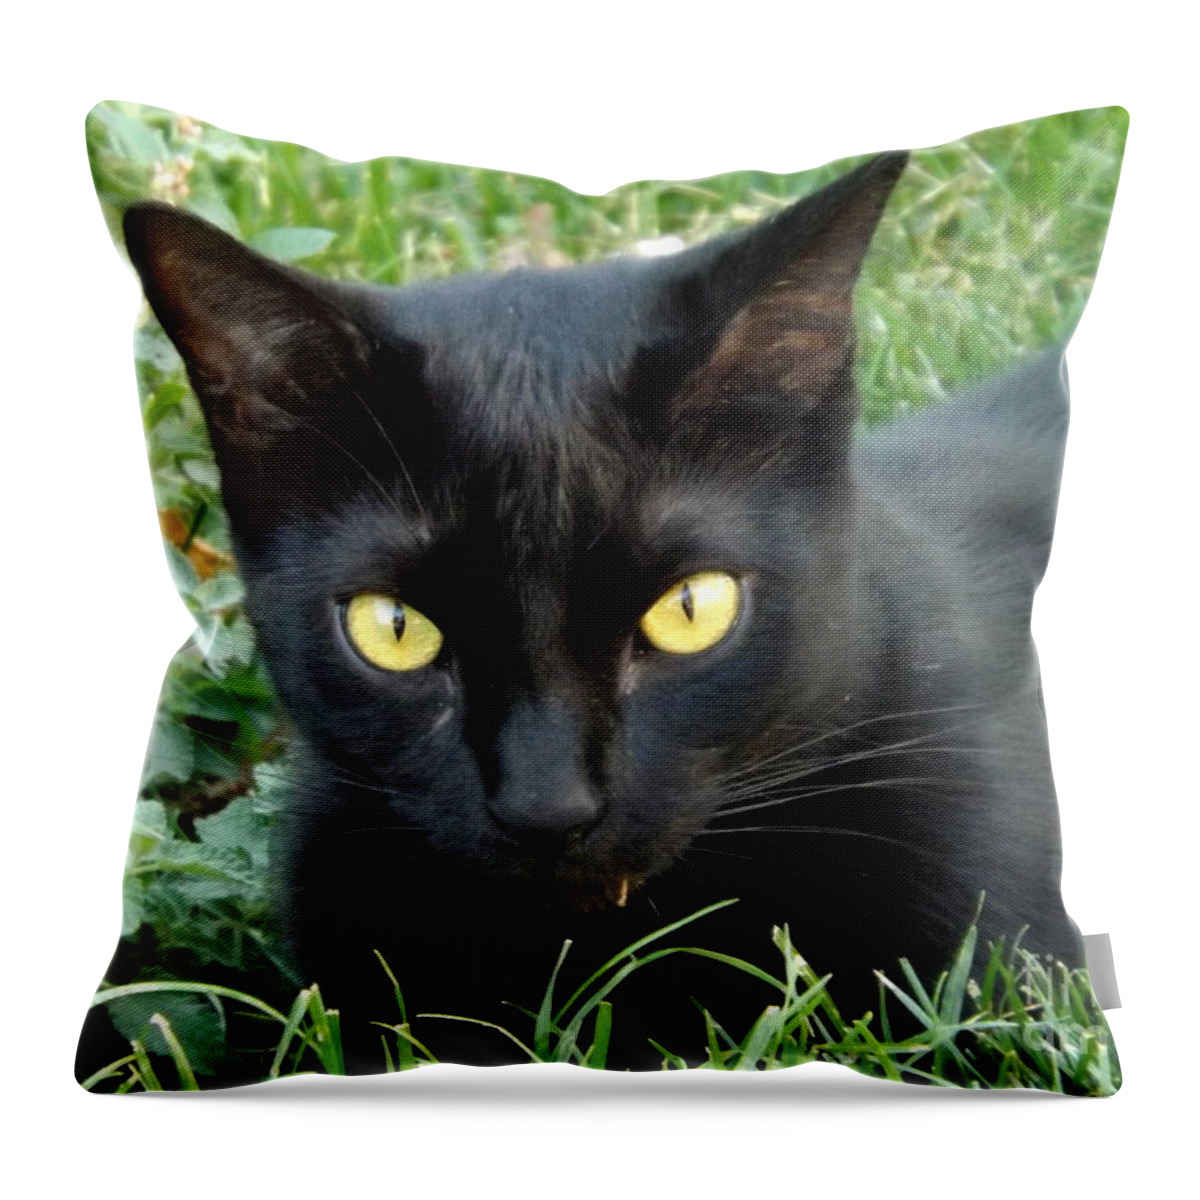 Animal Throw Pillow featuring the photograph Black Cat by Lingfai Leung